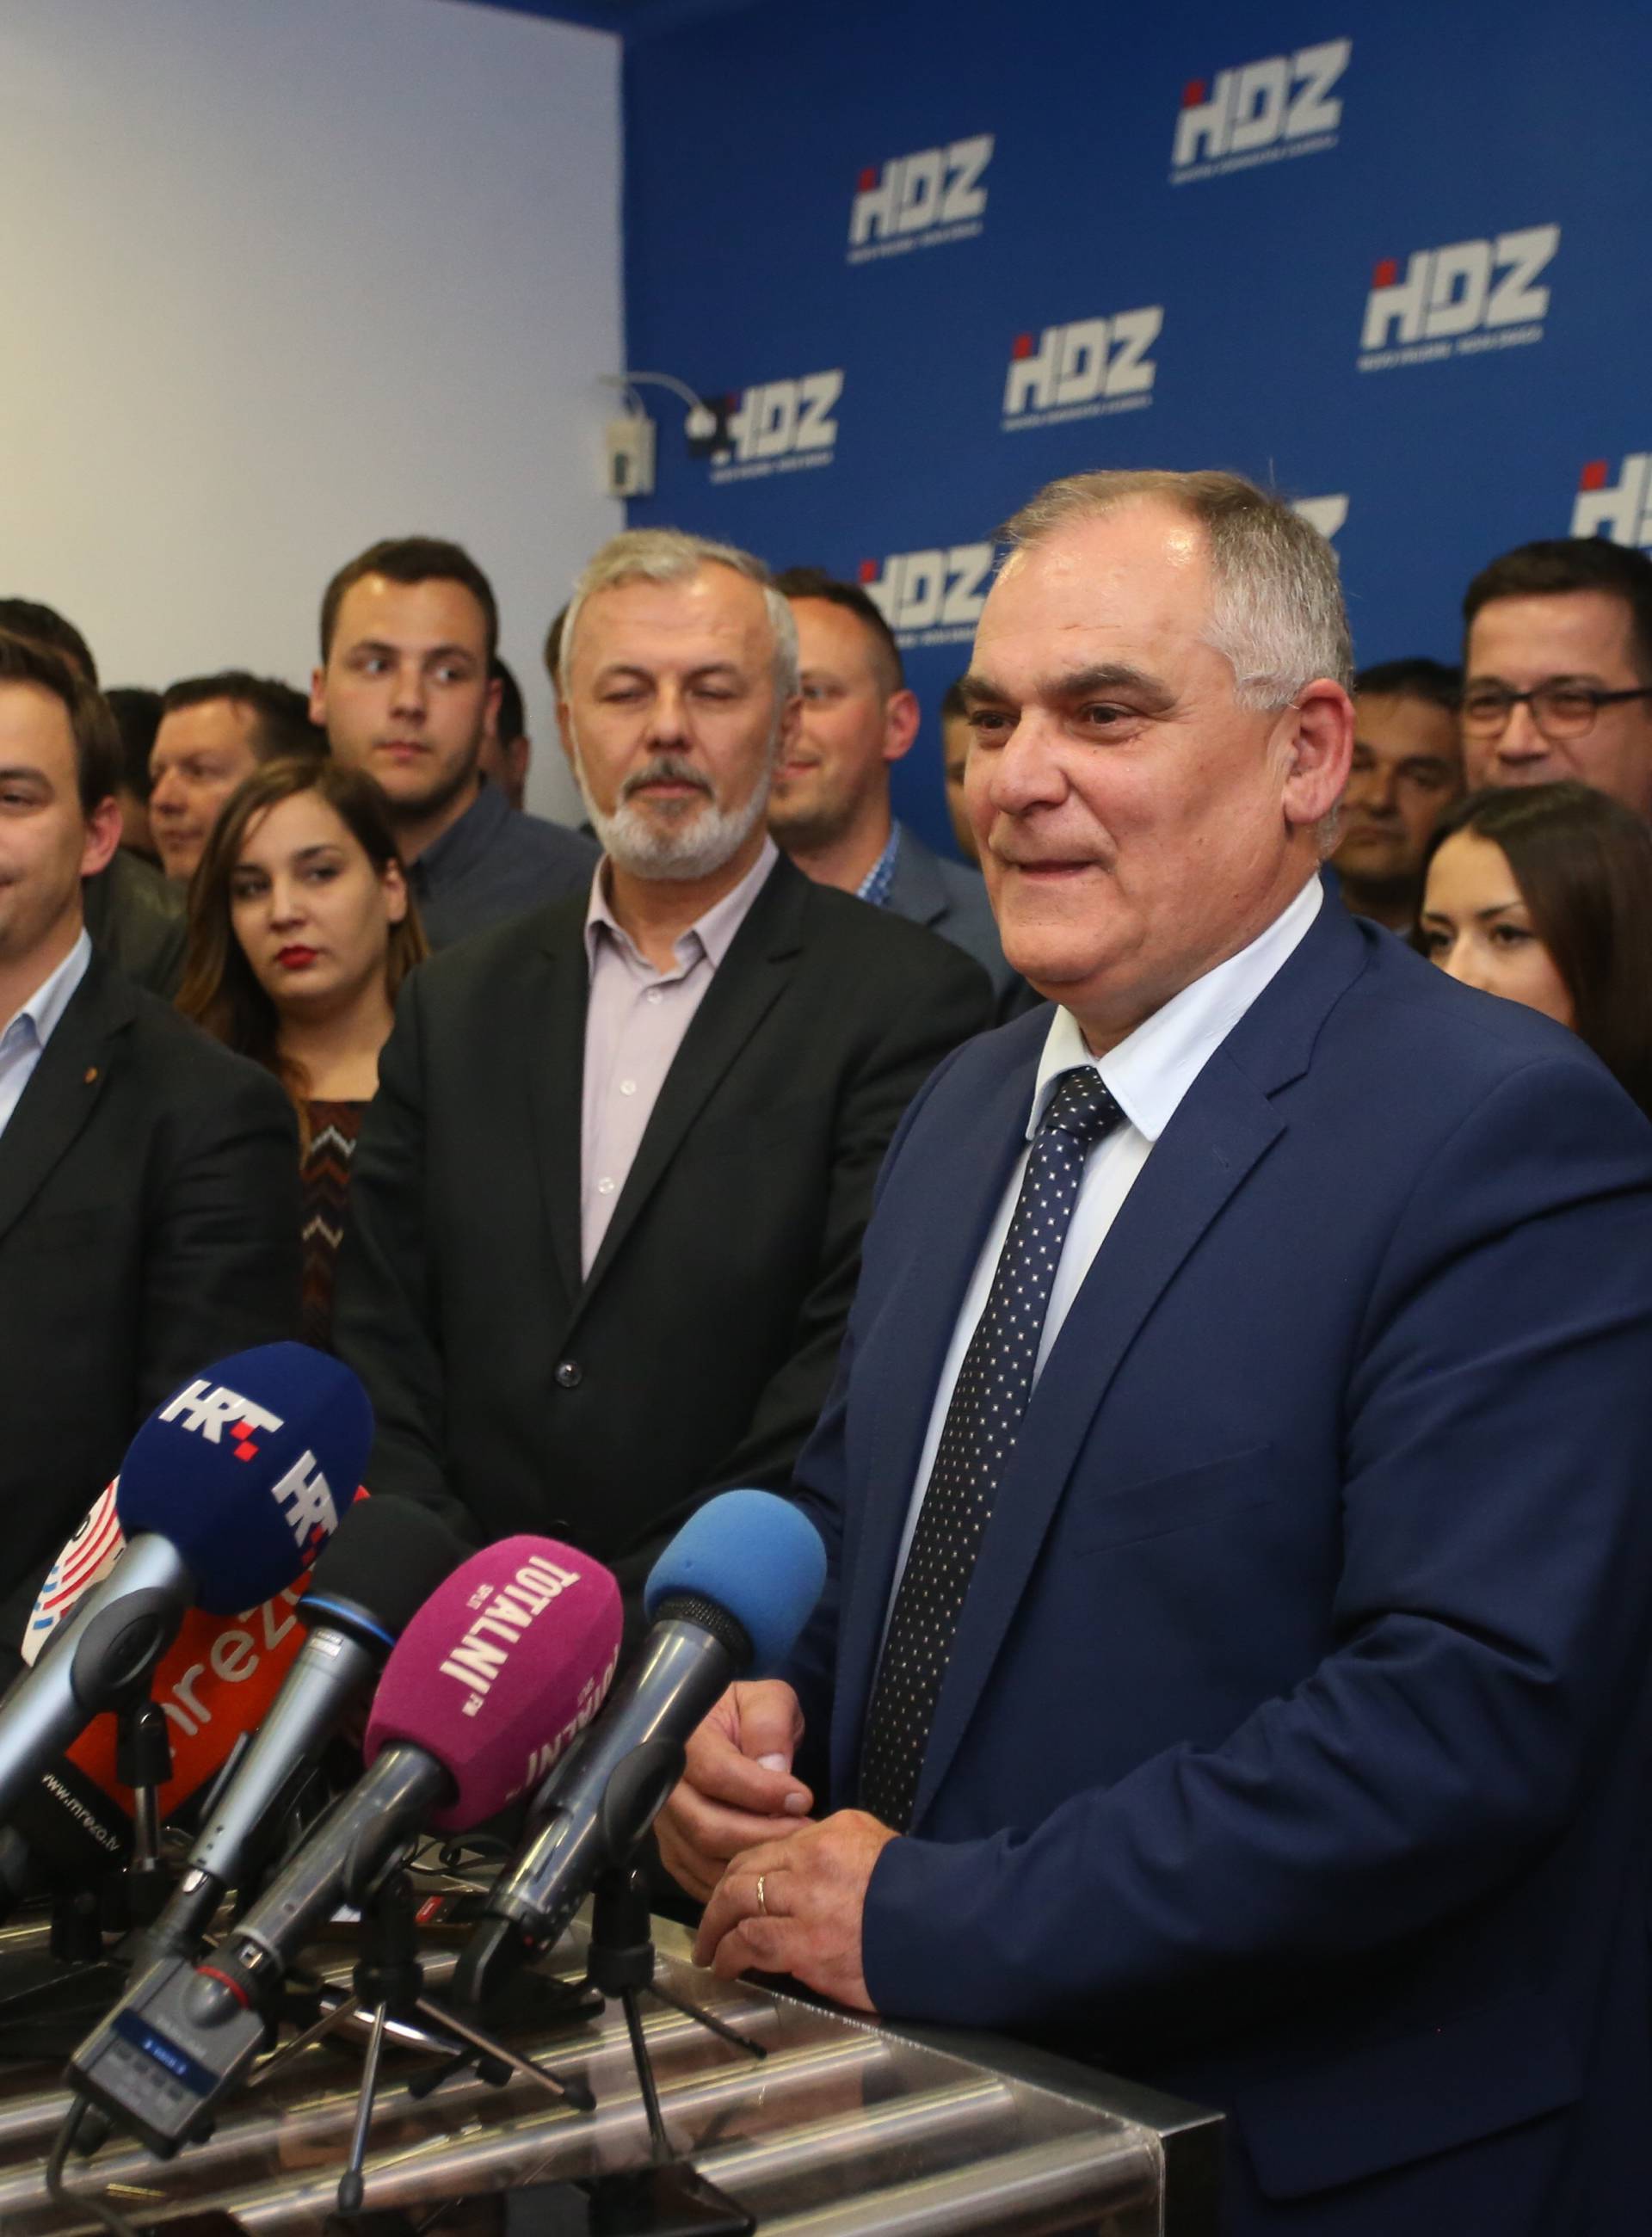 Ževrnja odstupio da ne sramoti HDZ, novi kandidat je Boban